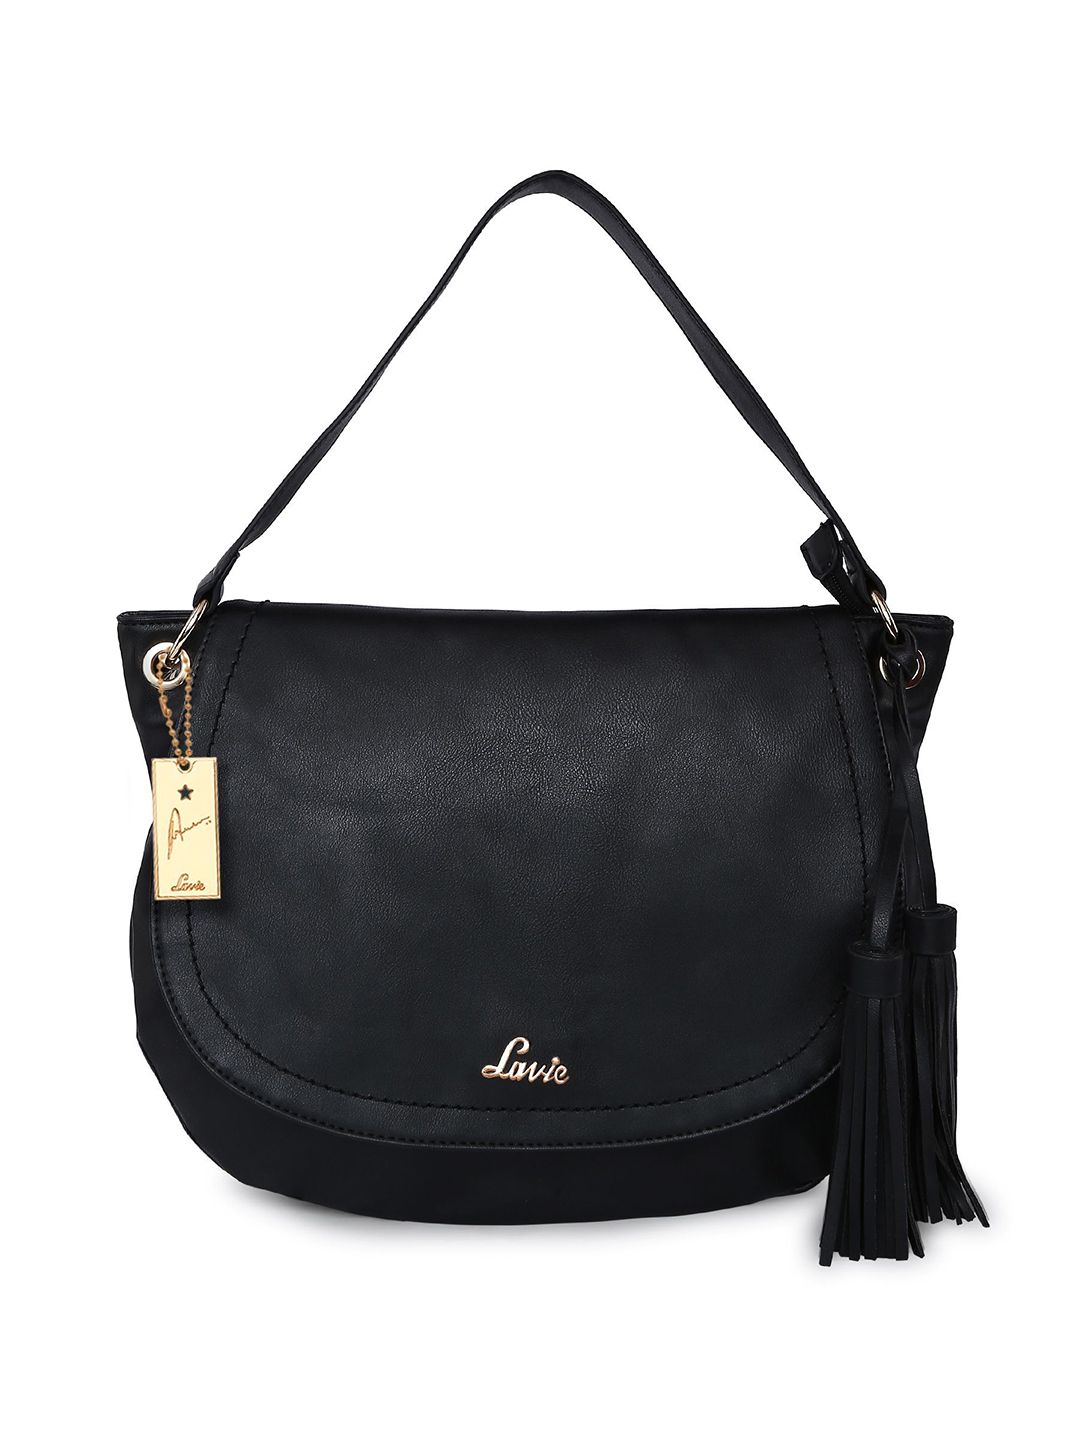 Lavie Black Solid ELOISE MD Hobo Bag Price in India